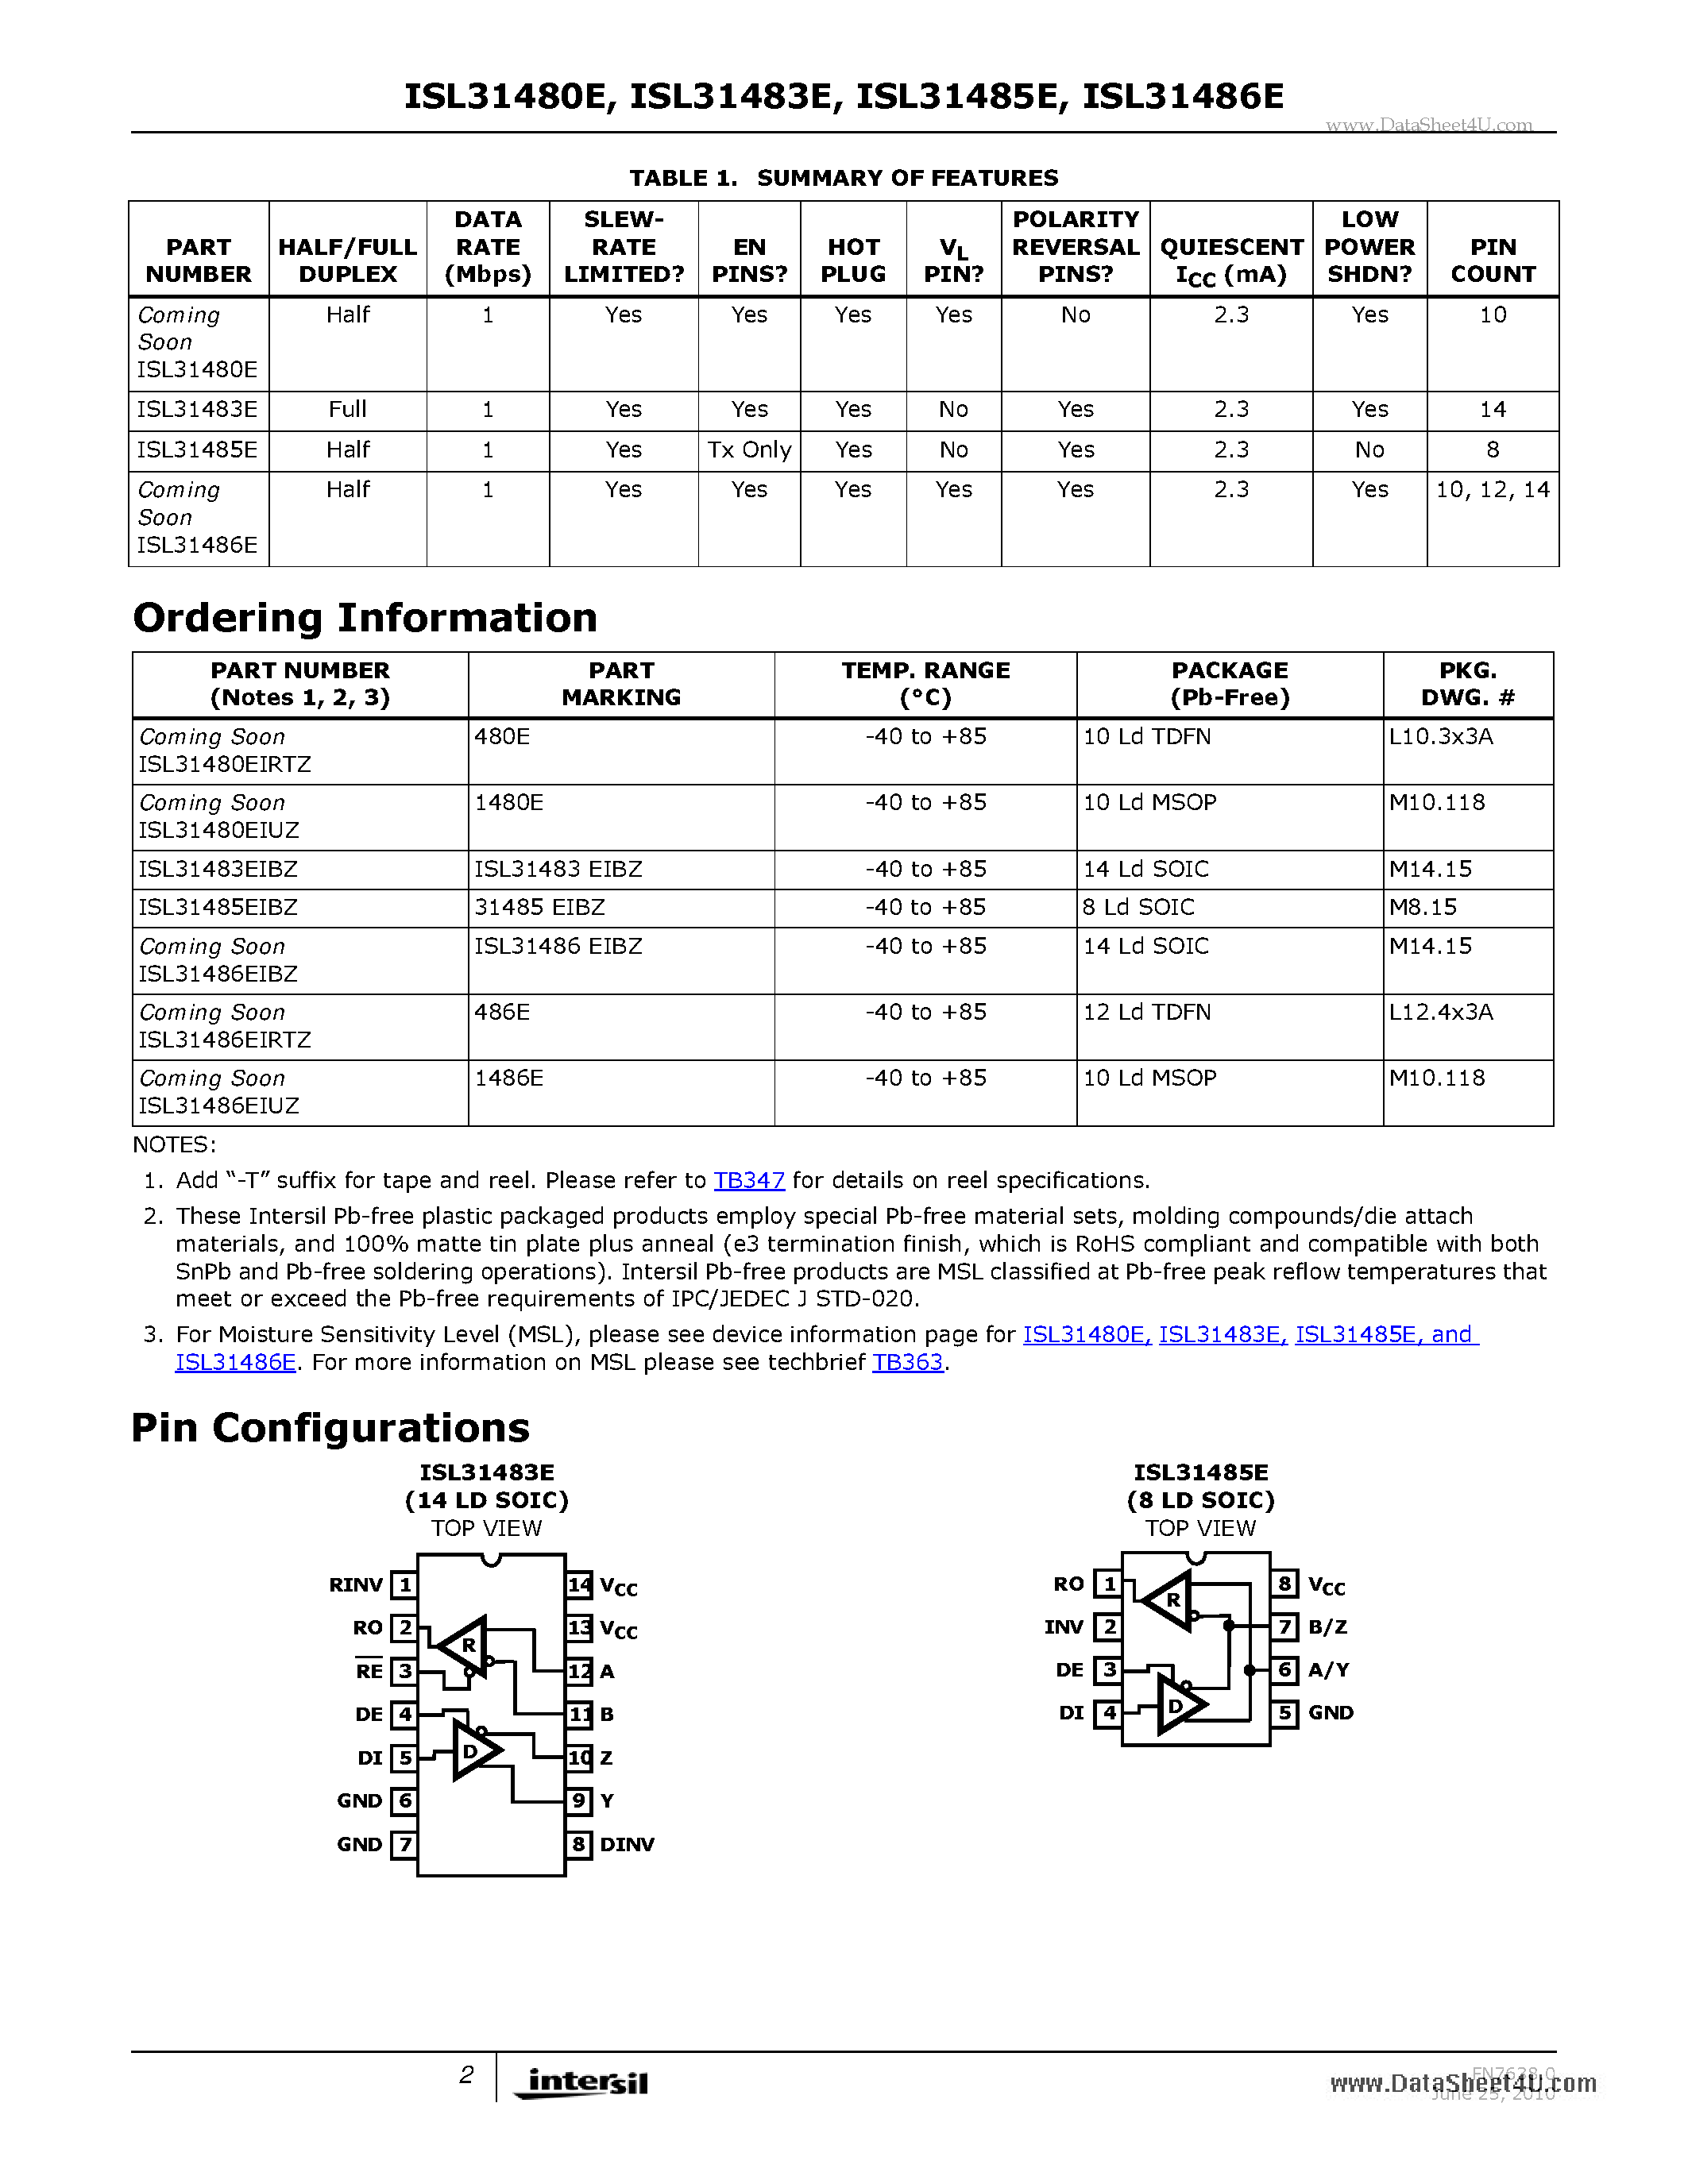 Даташит ISL31480E - (ISL31480E - ISL31486E) RS-485/RS-422 Transceivers страница 2